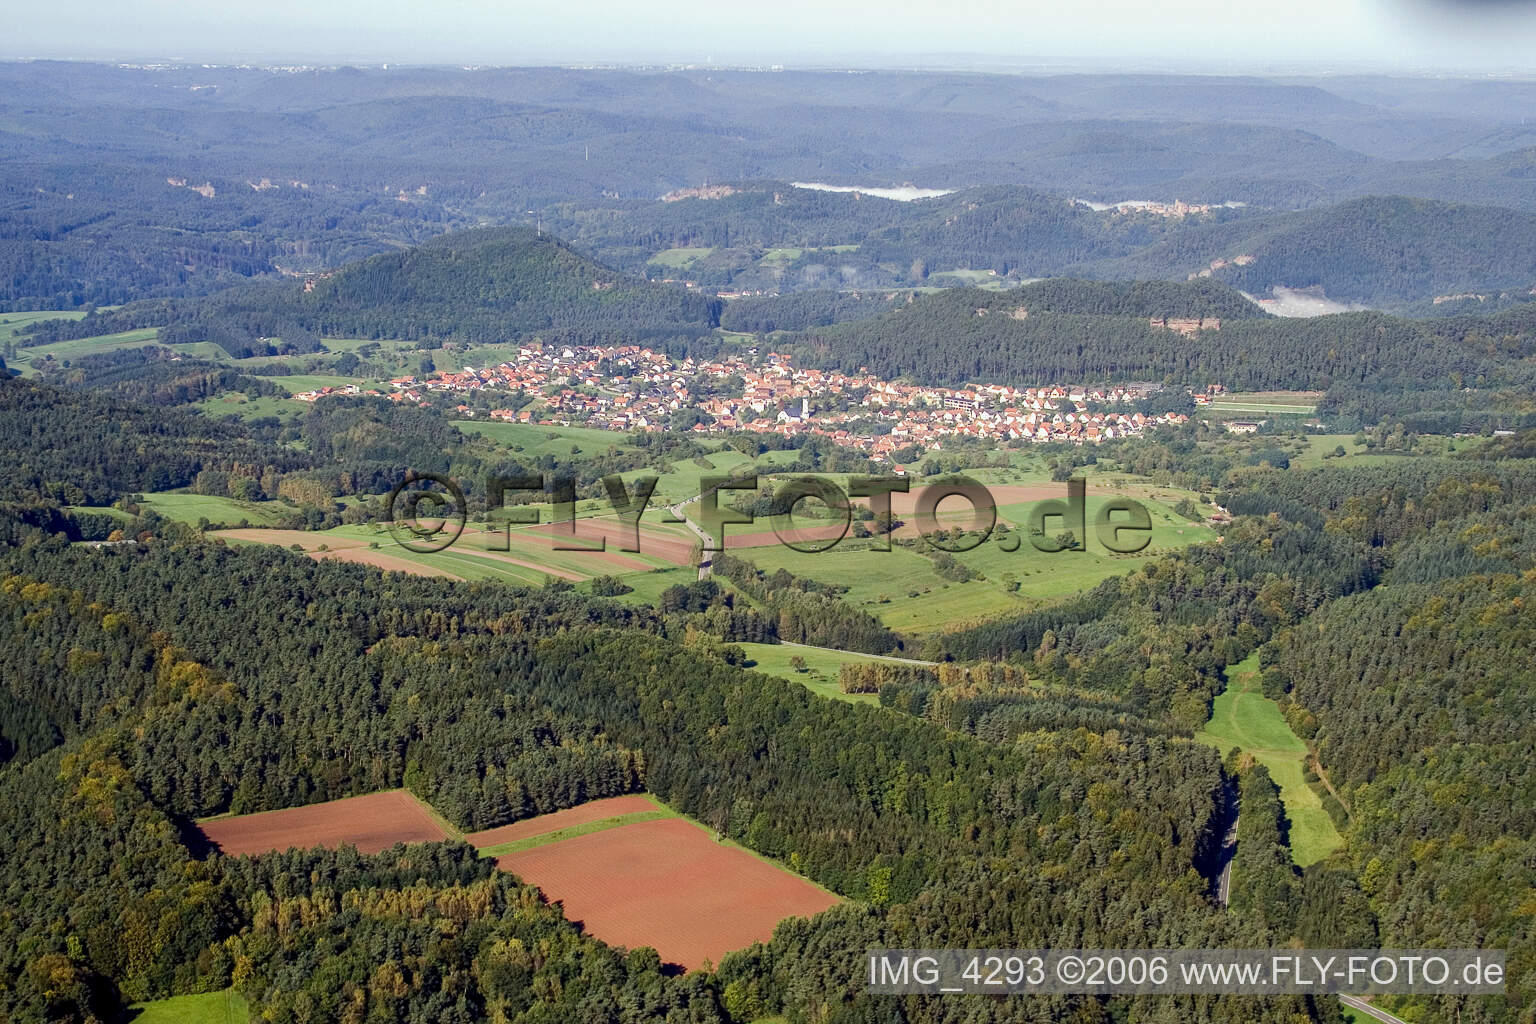 Luftbild von Busenberg im Bundesland Rheinland-Pfalz, Deutschland